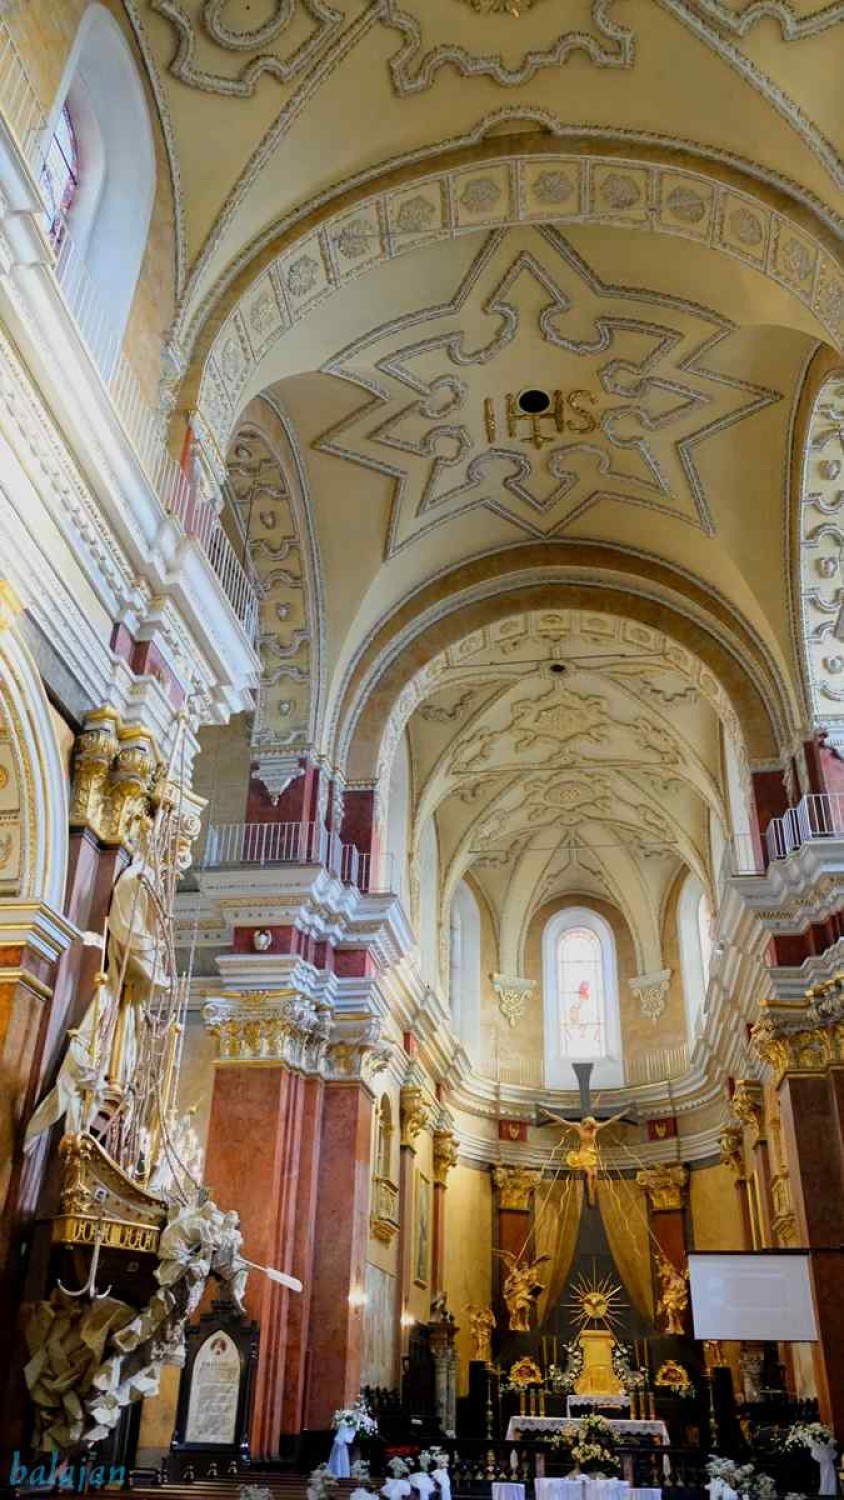 Kościół pw. św. Teresy i klasztor Karmelitów bosych w Przemyślu. W obiektywie stargardzianina Jana Balewskiego